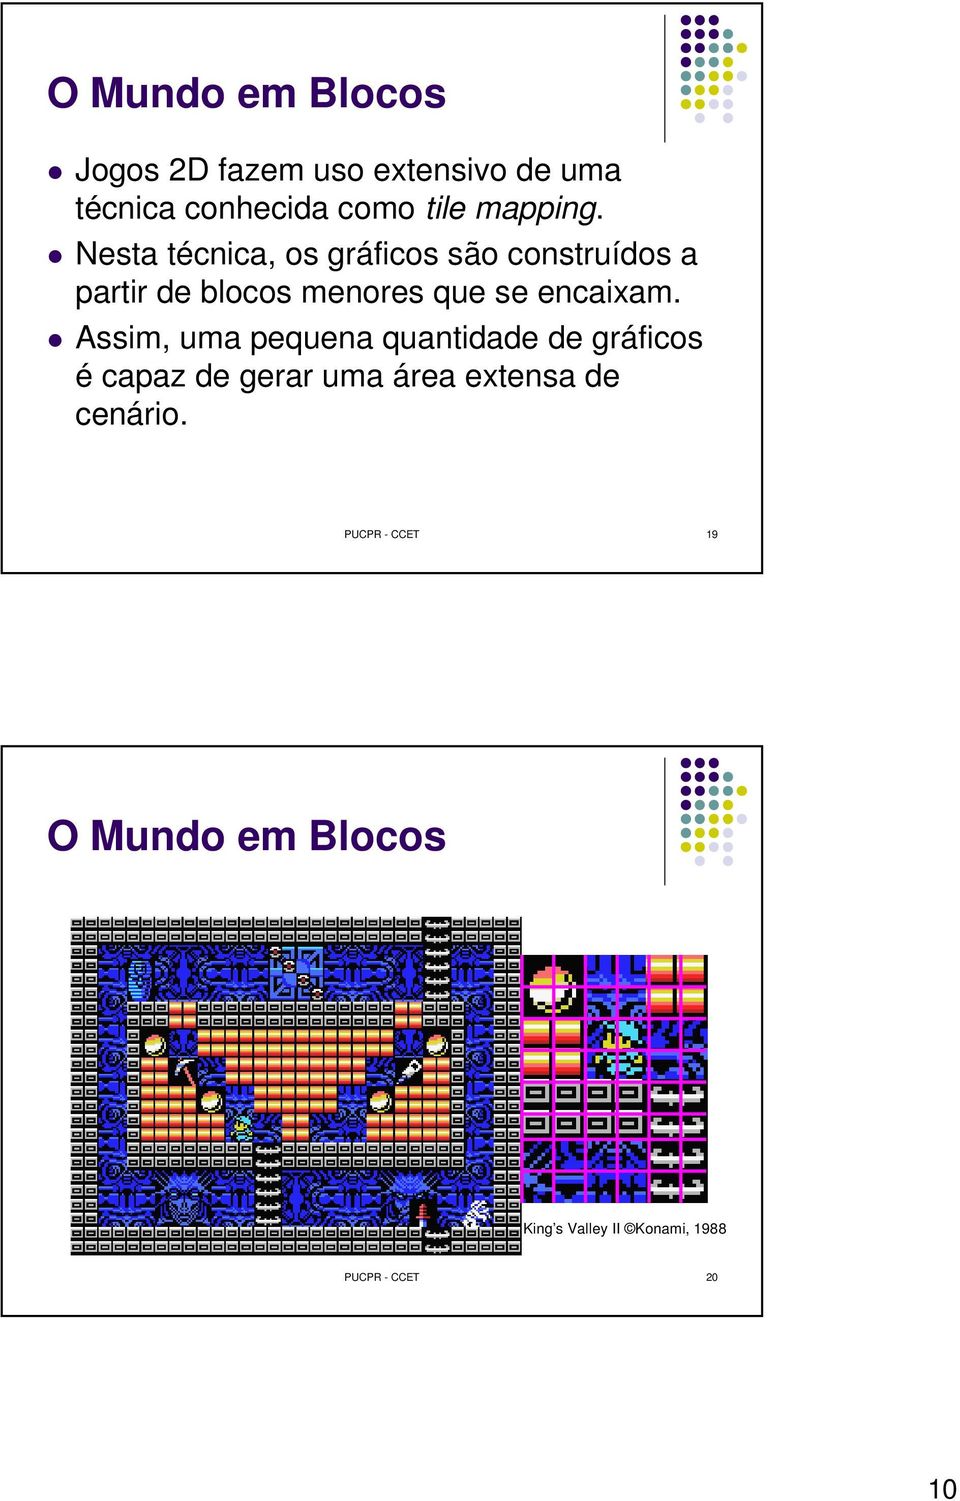 Nesta técnica, os gráficos são construídos a partir de blocos menores que se encaixam.